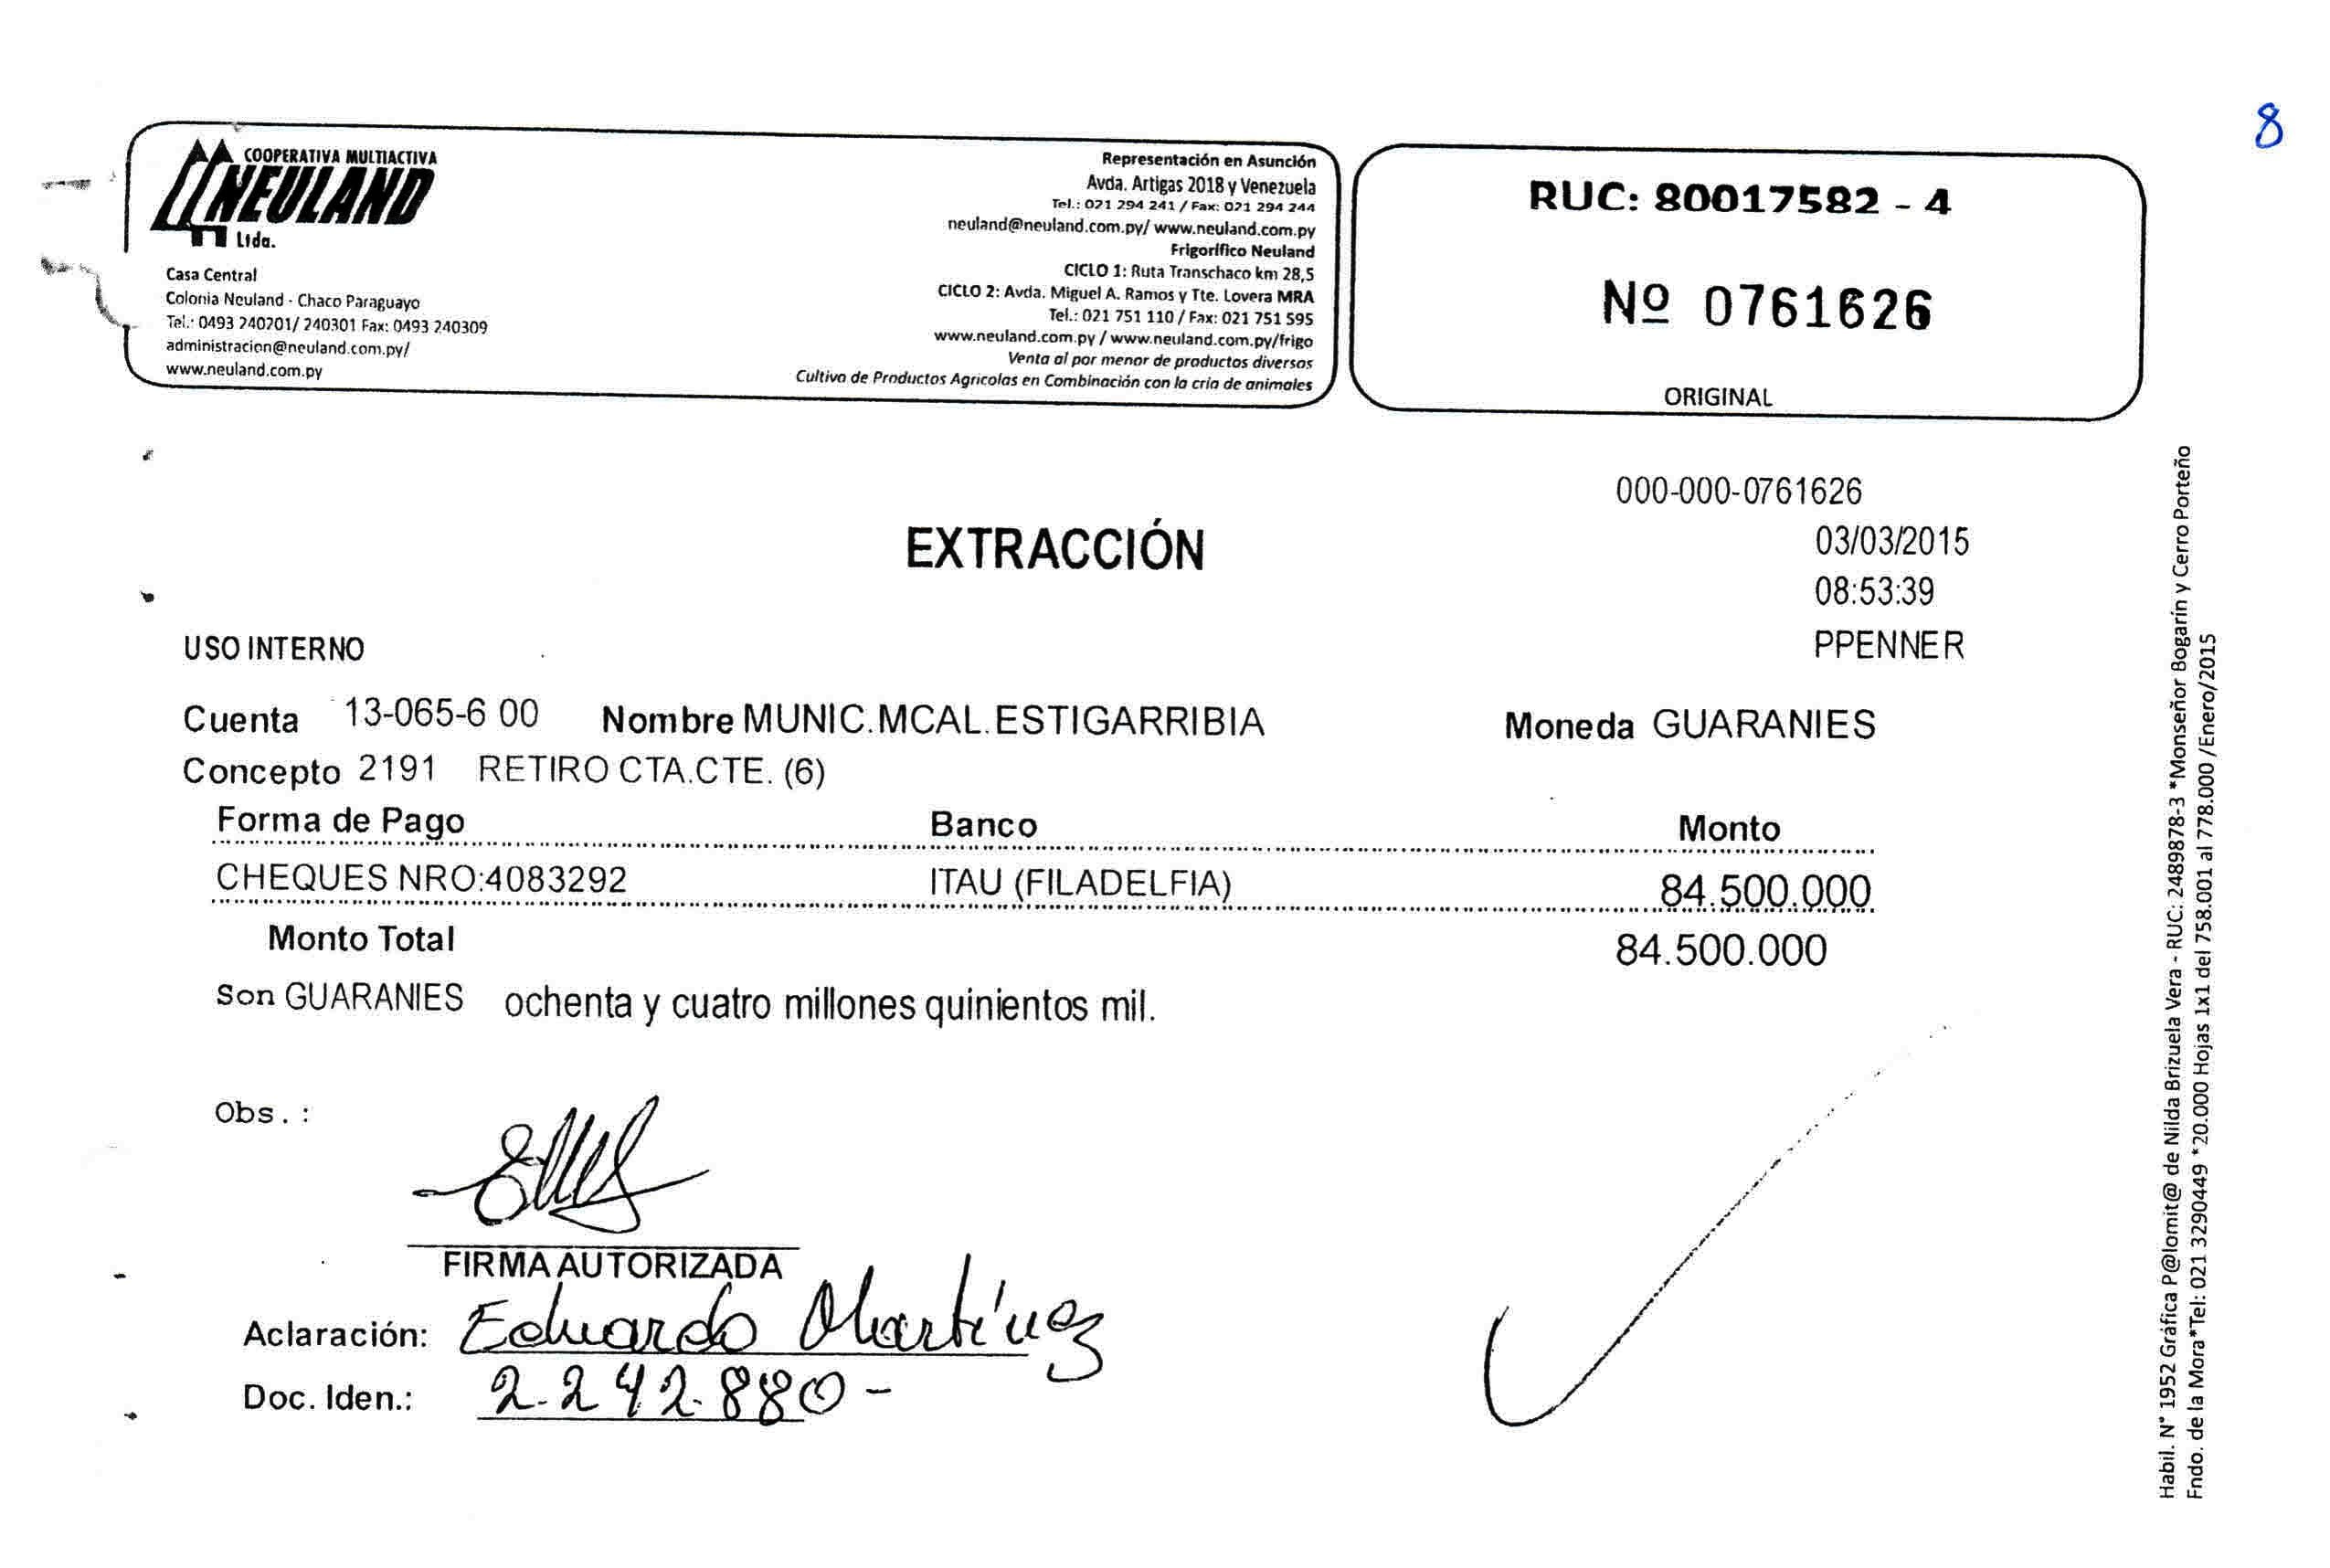 El 3 de marzo de 2015, se retiraron G. 84 millones de la cuenta de la Municipalidad de Mcal. Estigarribia.